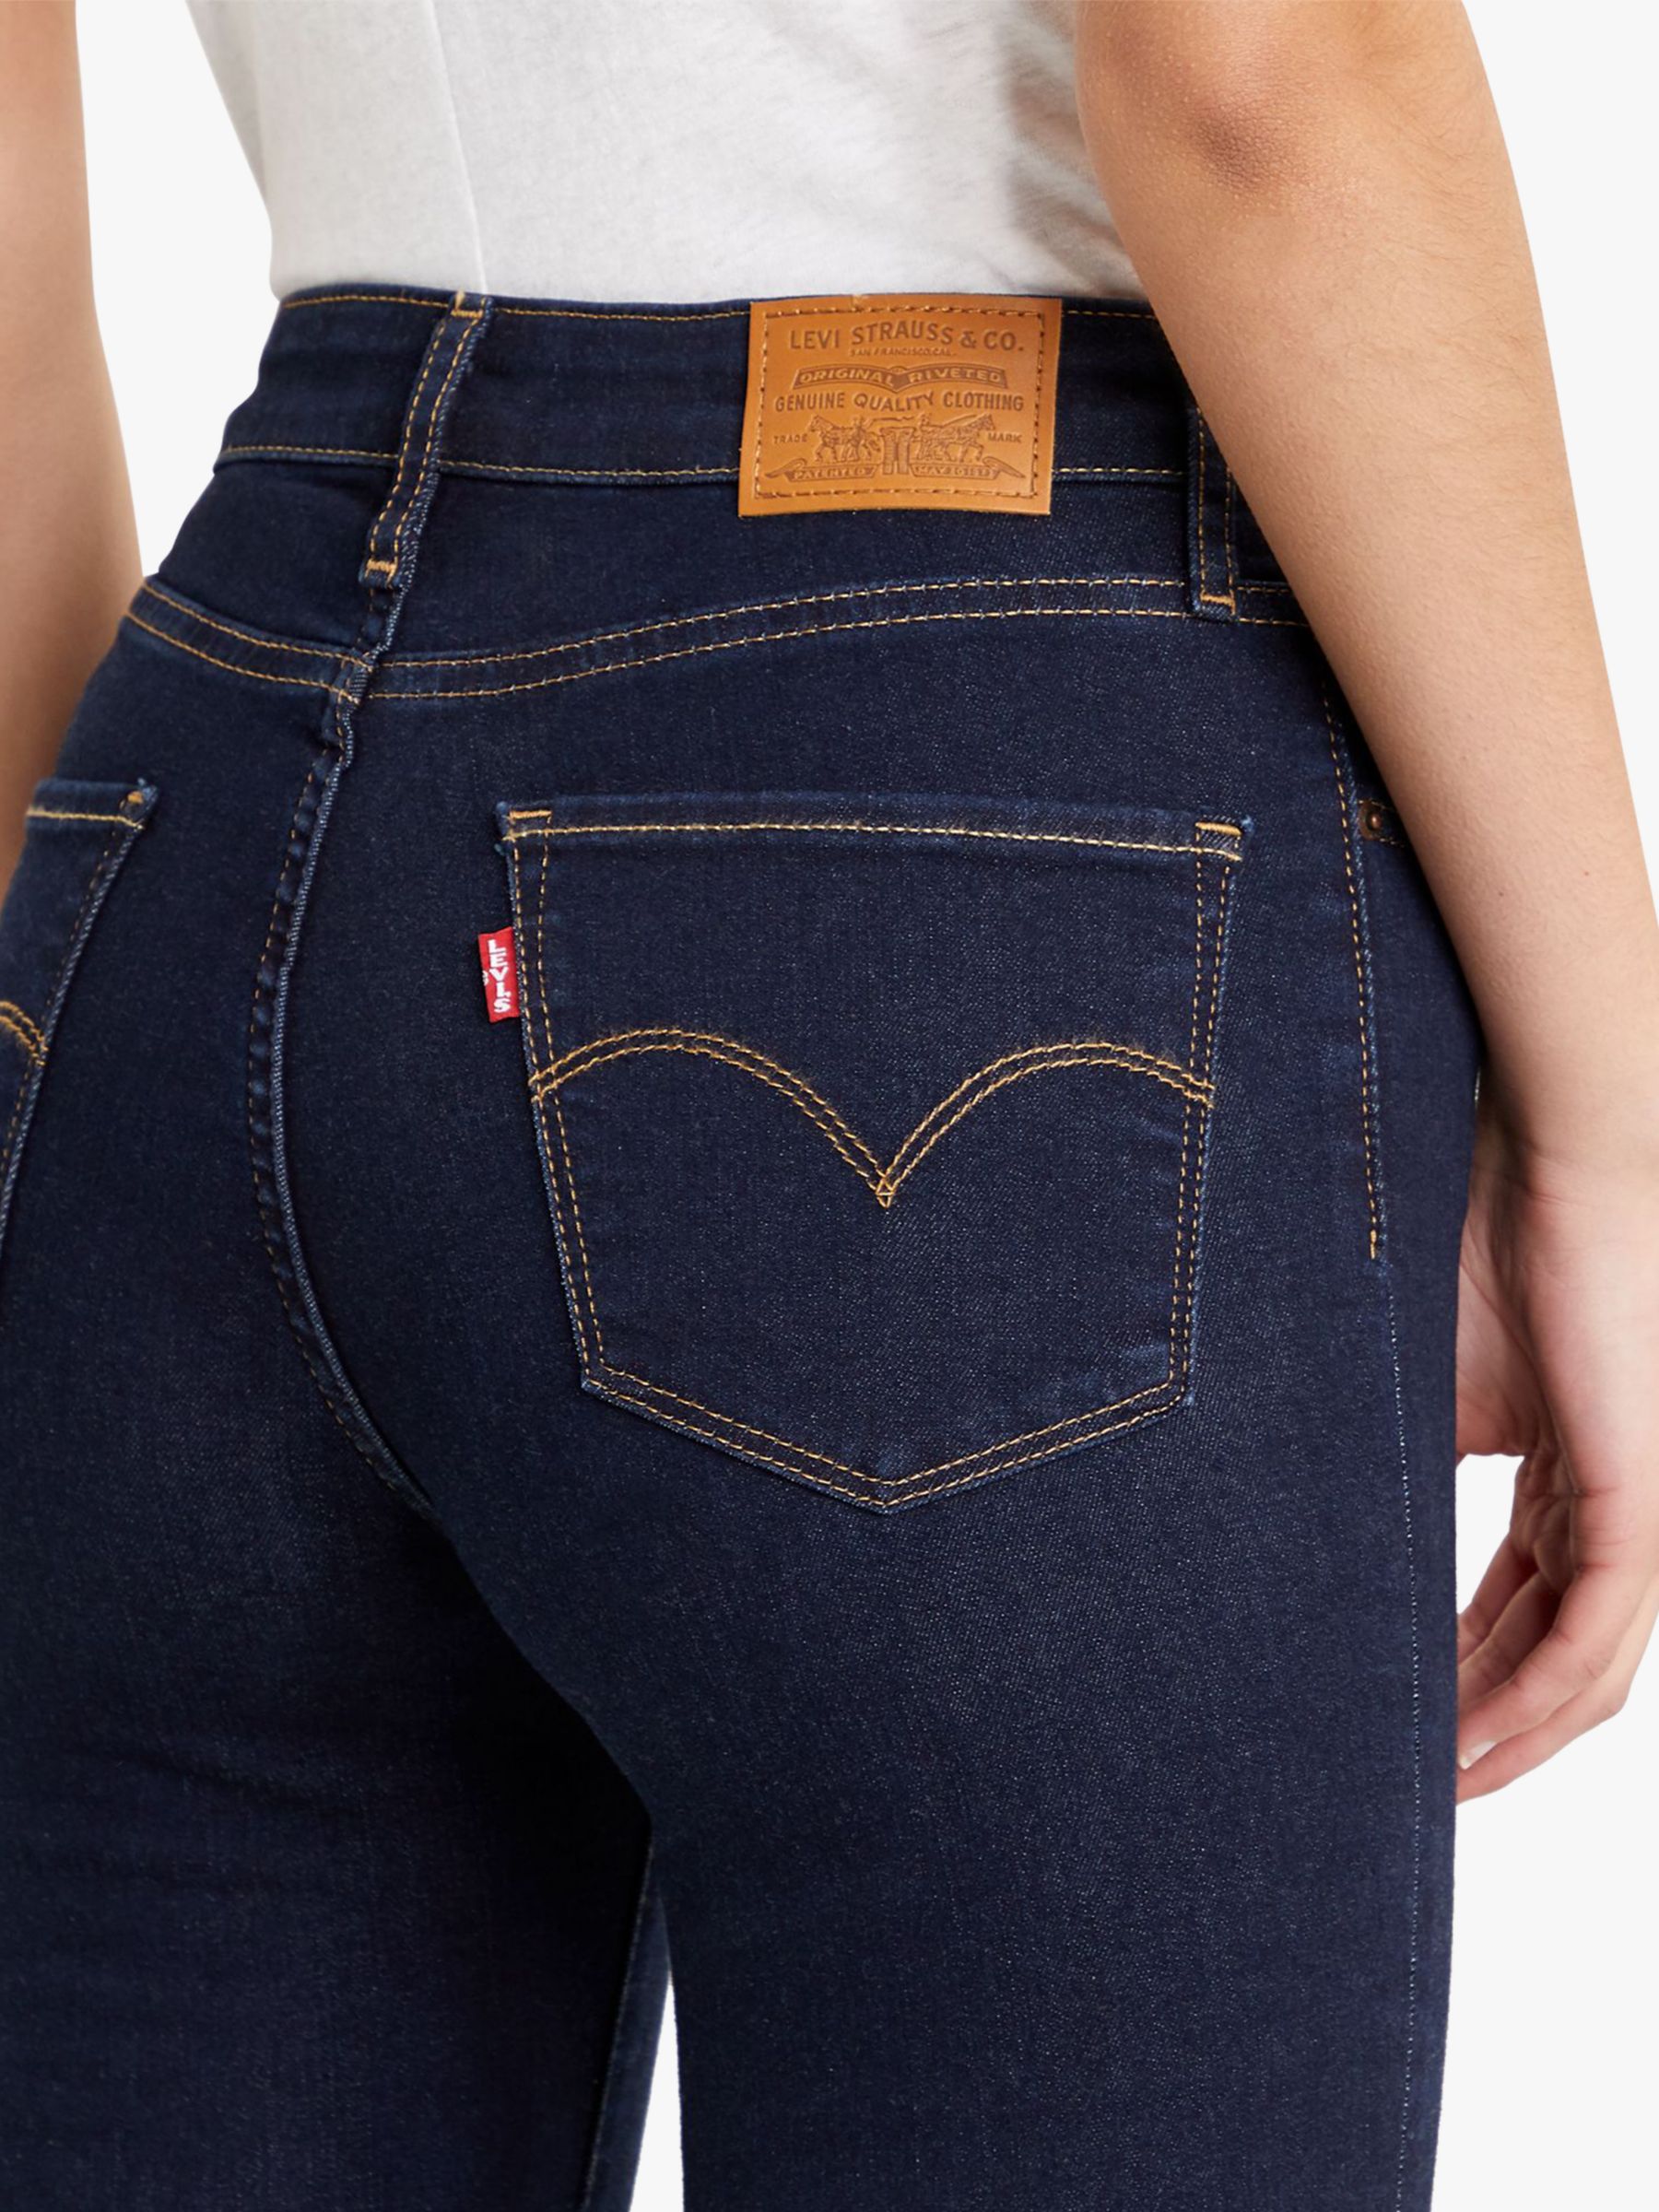 Levis Women Plus Size Classic Bootcut Jeans Size 18 RRP £90